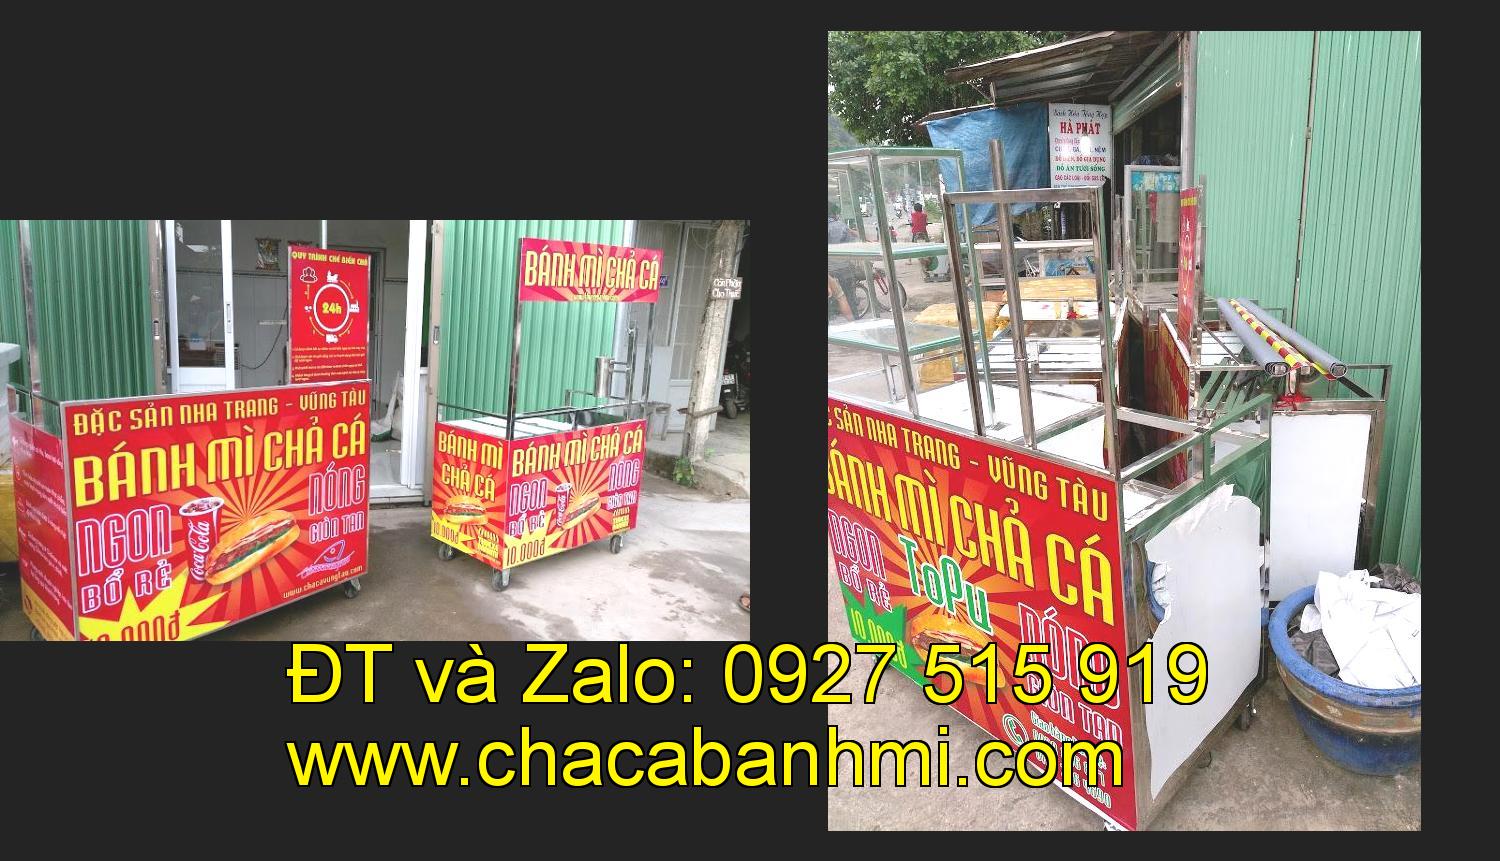 xe bánh mì chả cá giá rẻ tại tỉnh Cao Bằng